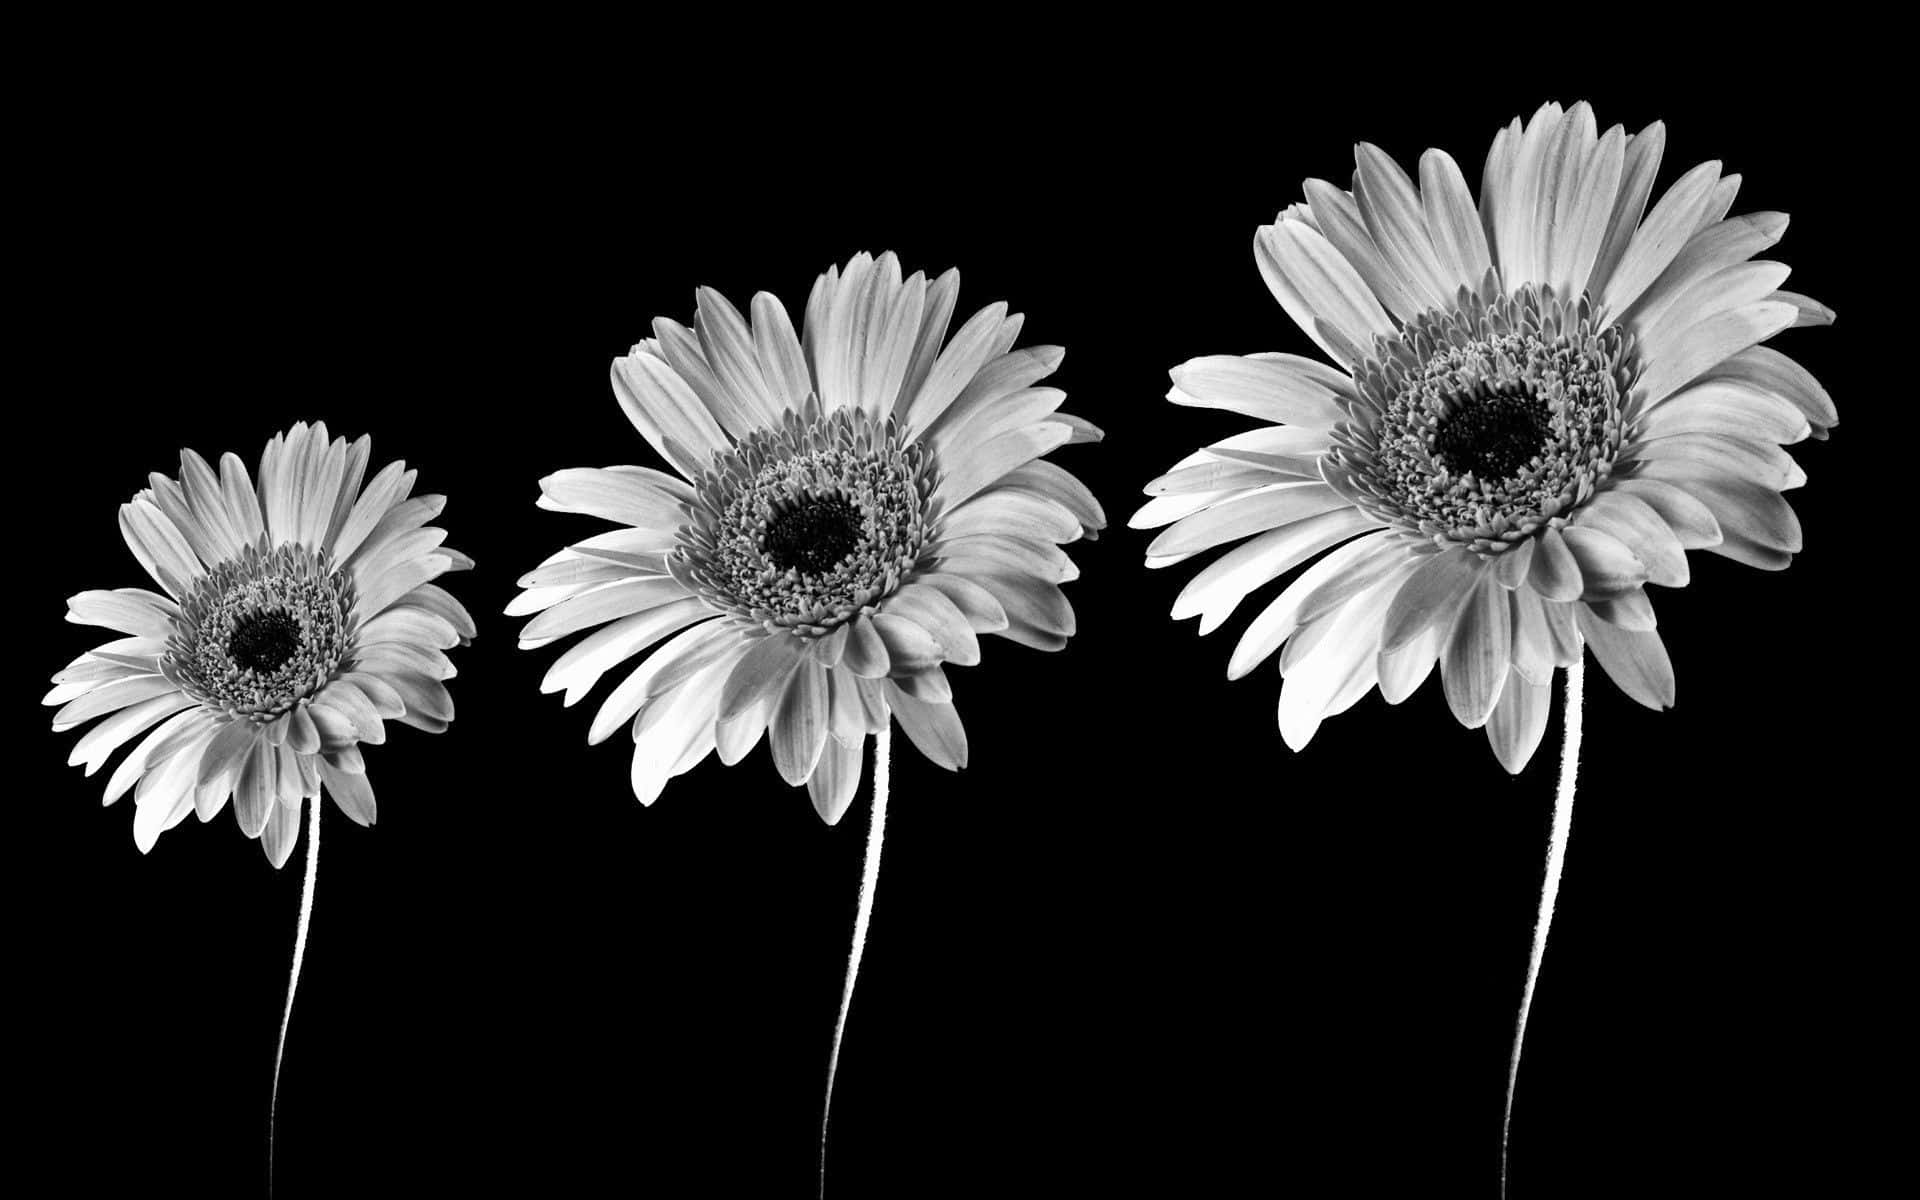 Black White Sunflower On Black Background Stock Photo 706176502   Shutterstock